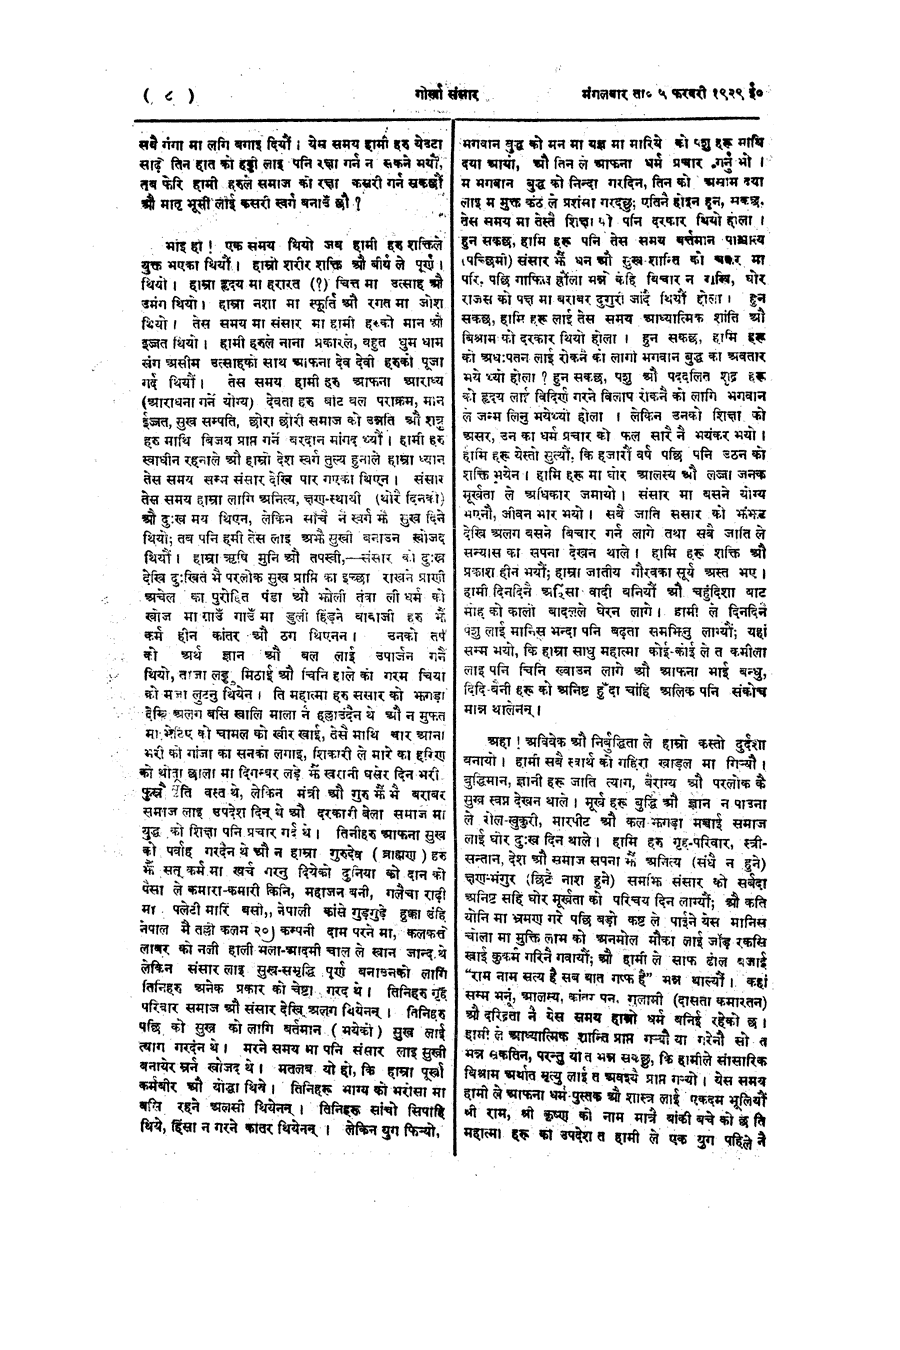 Gorkha Sansar, 5 Feb 1929, page 8